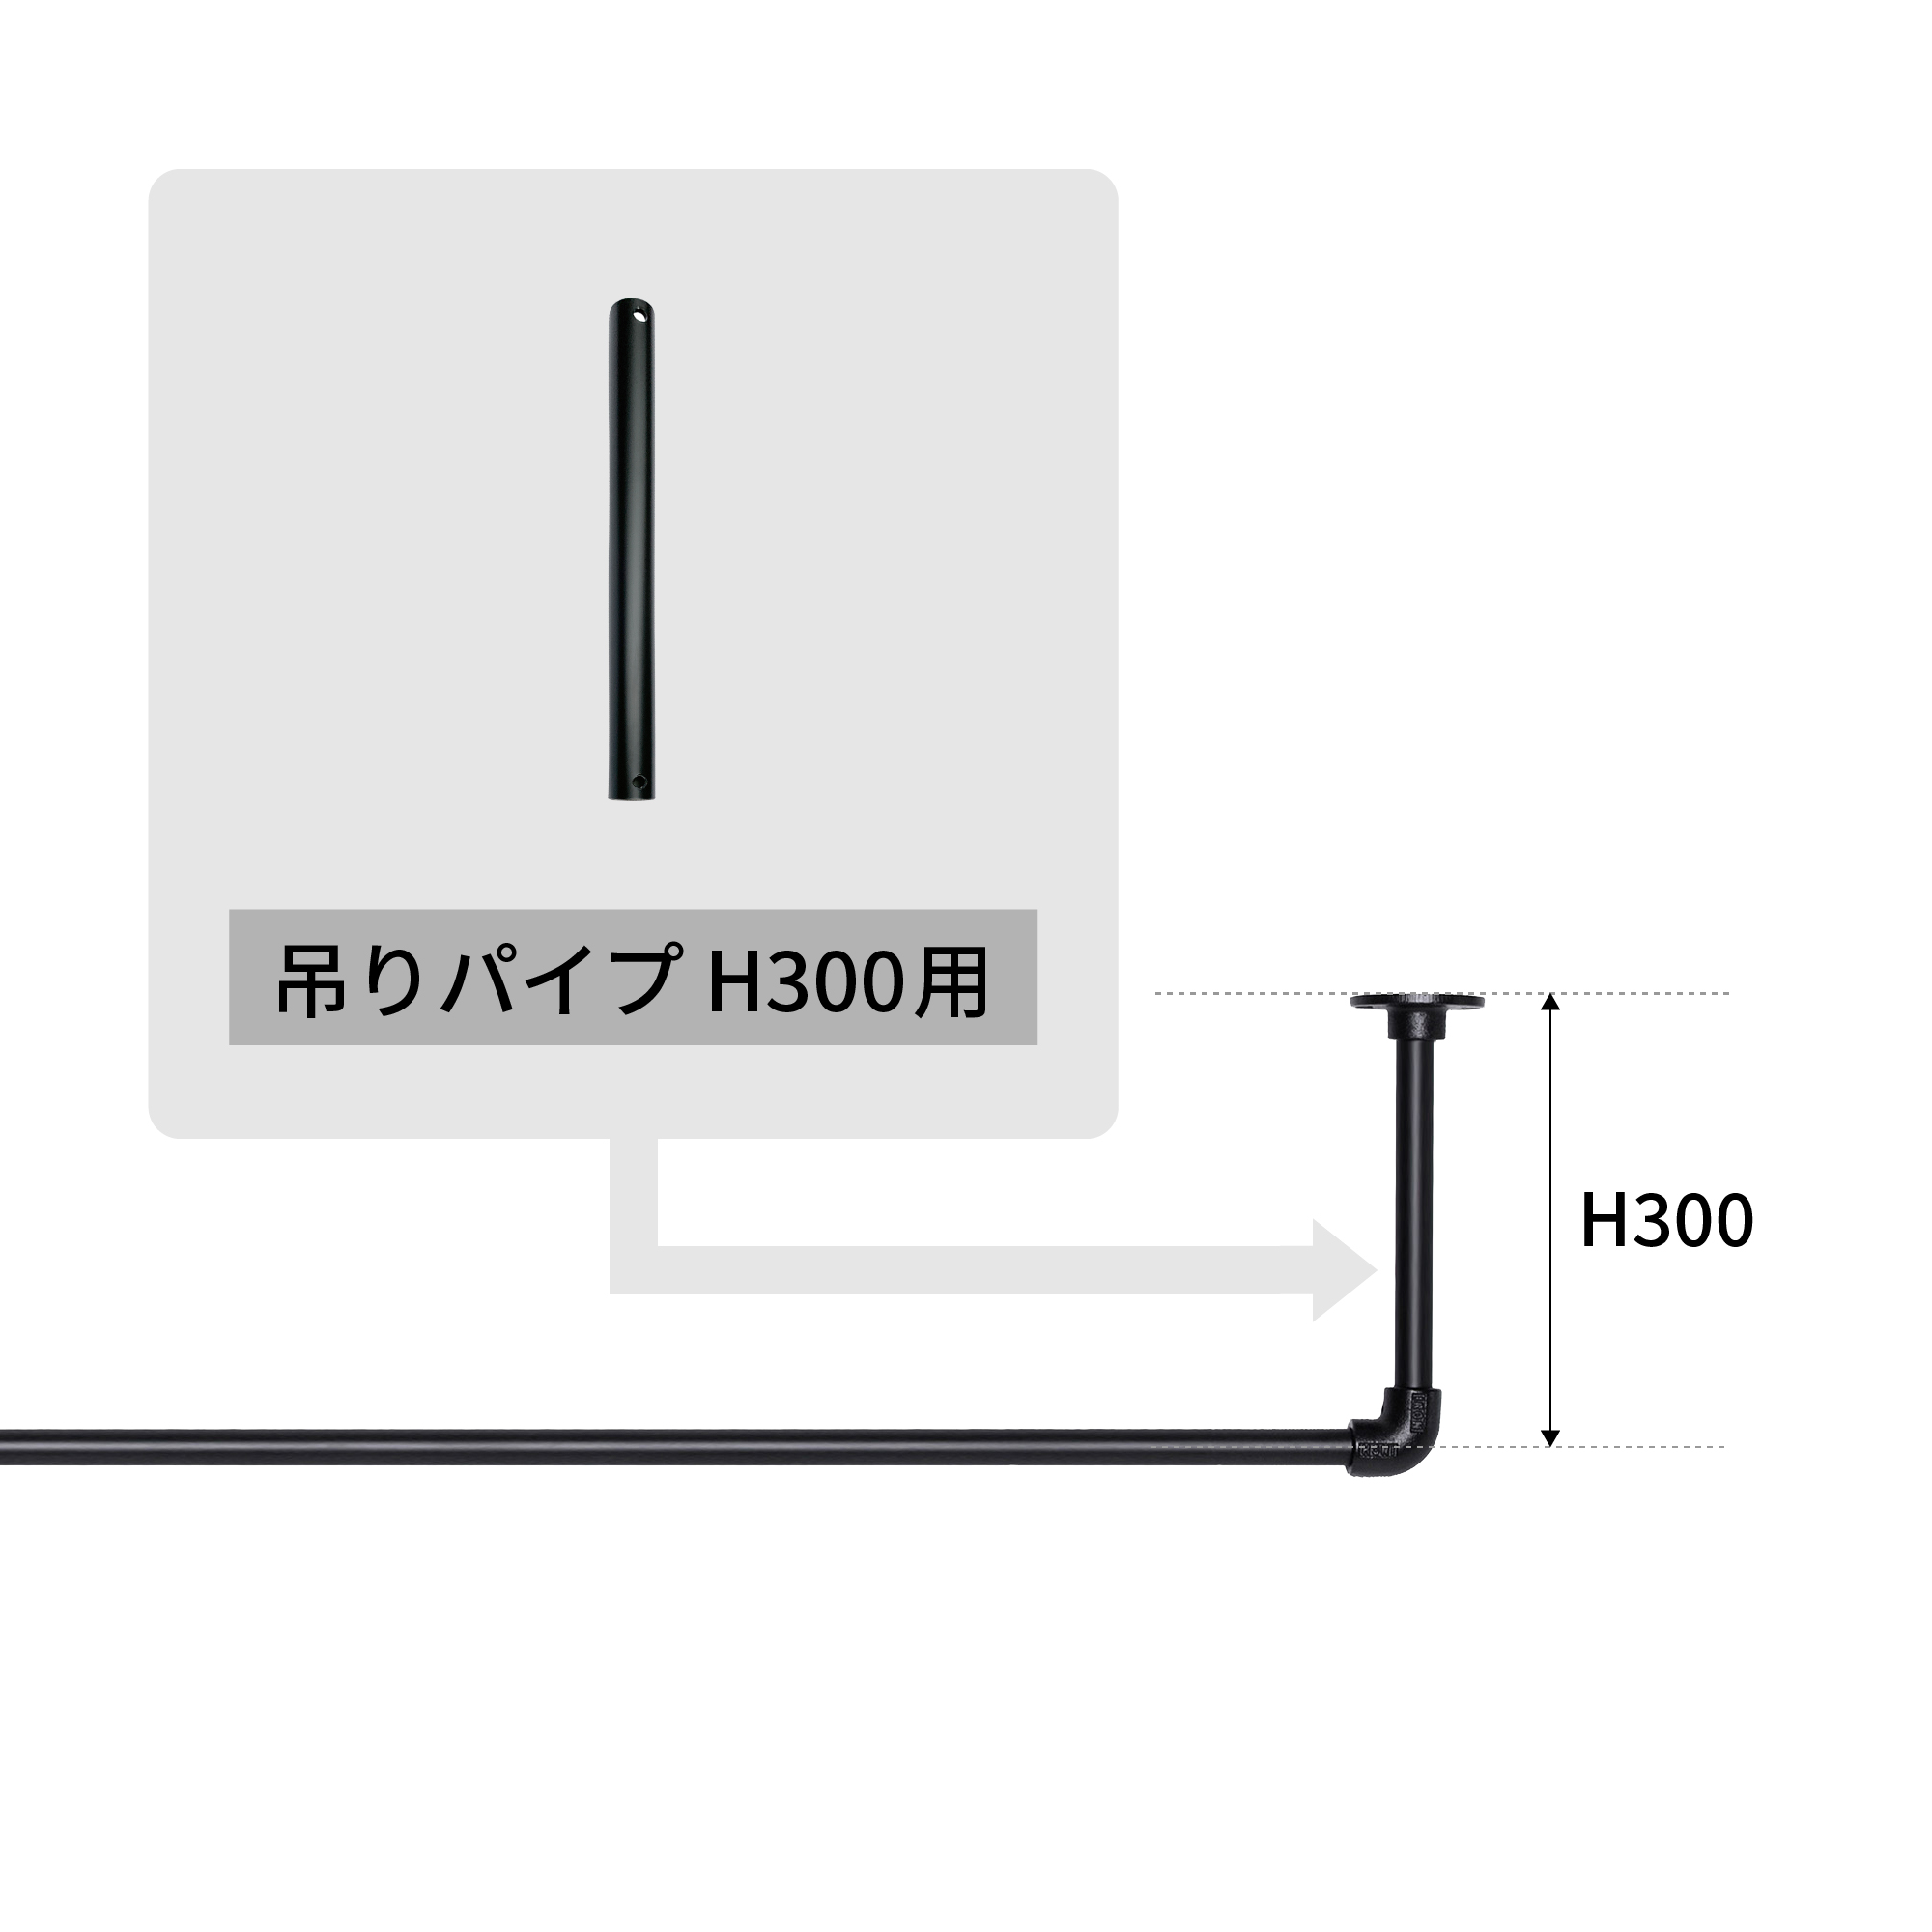 アイアンハンガーパイプ 吊りパイプ H300用 ホワイト PS-HB008-30-G141